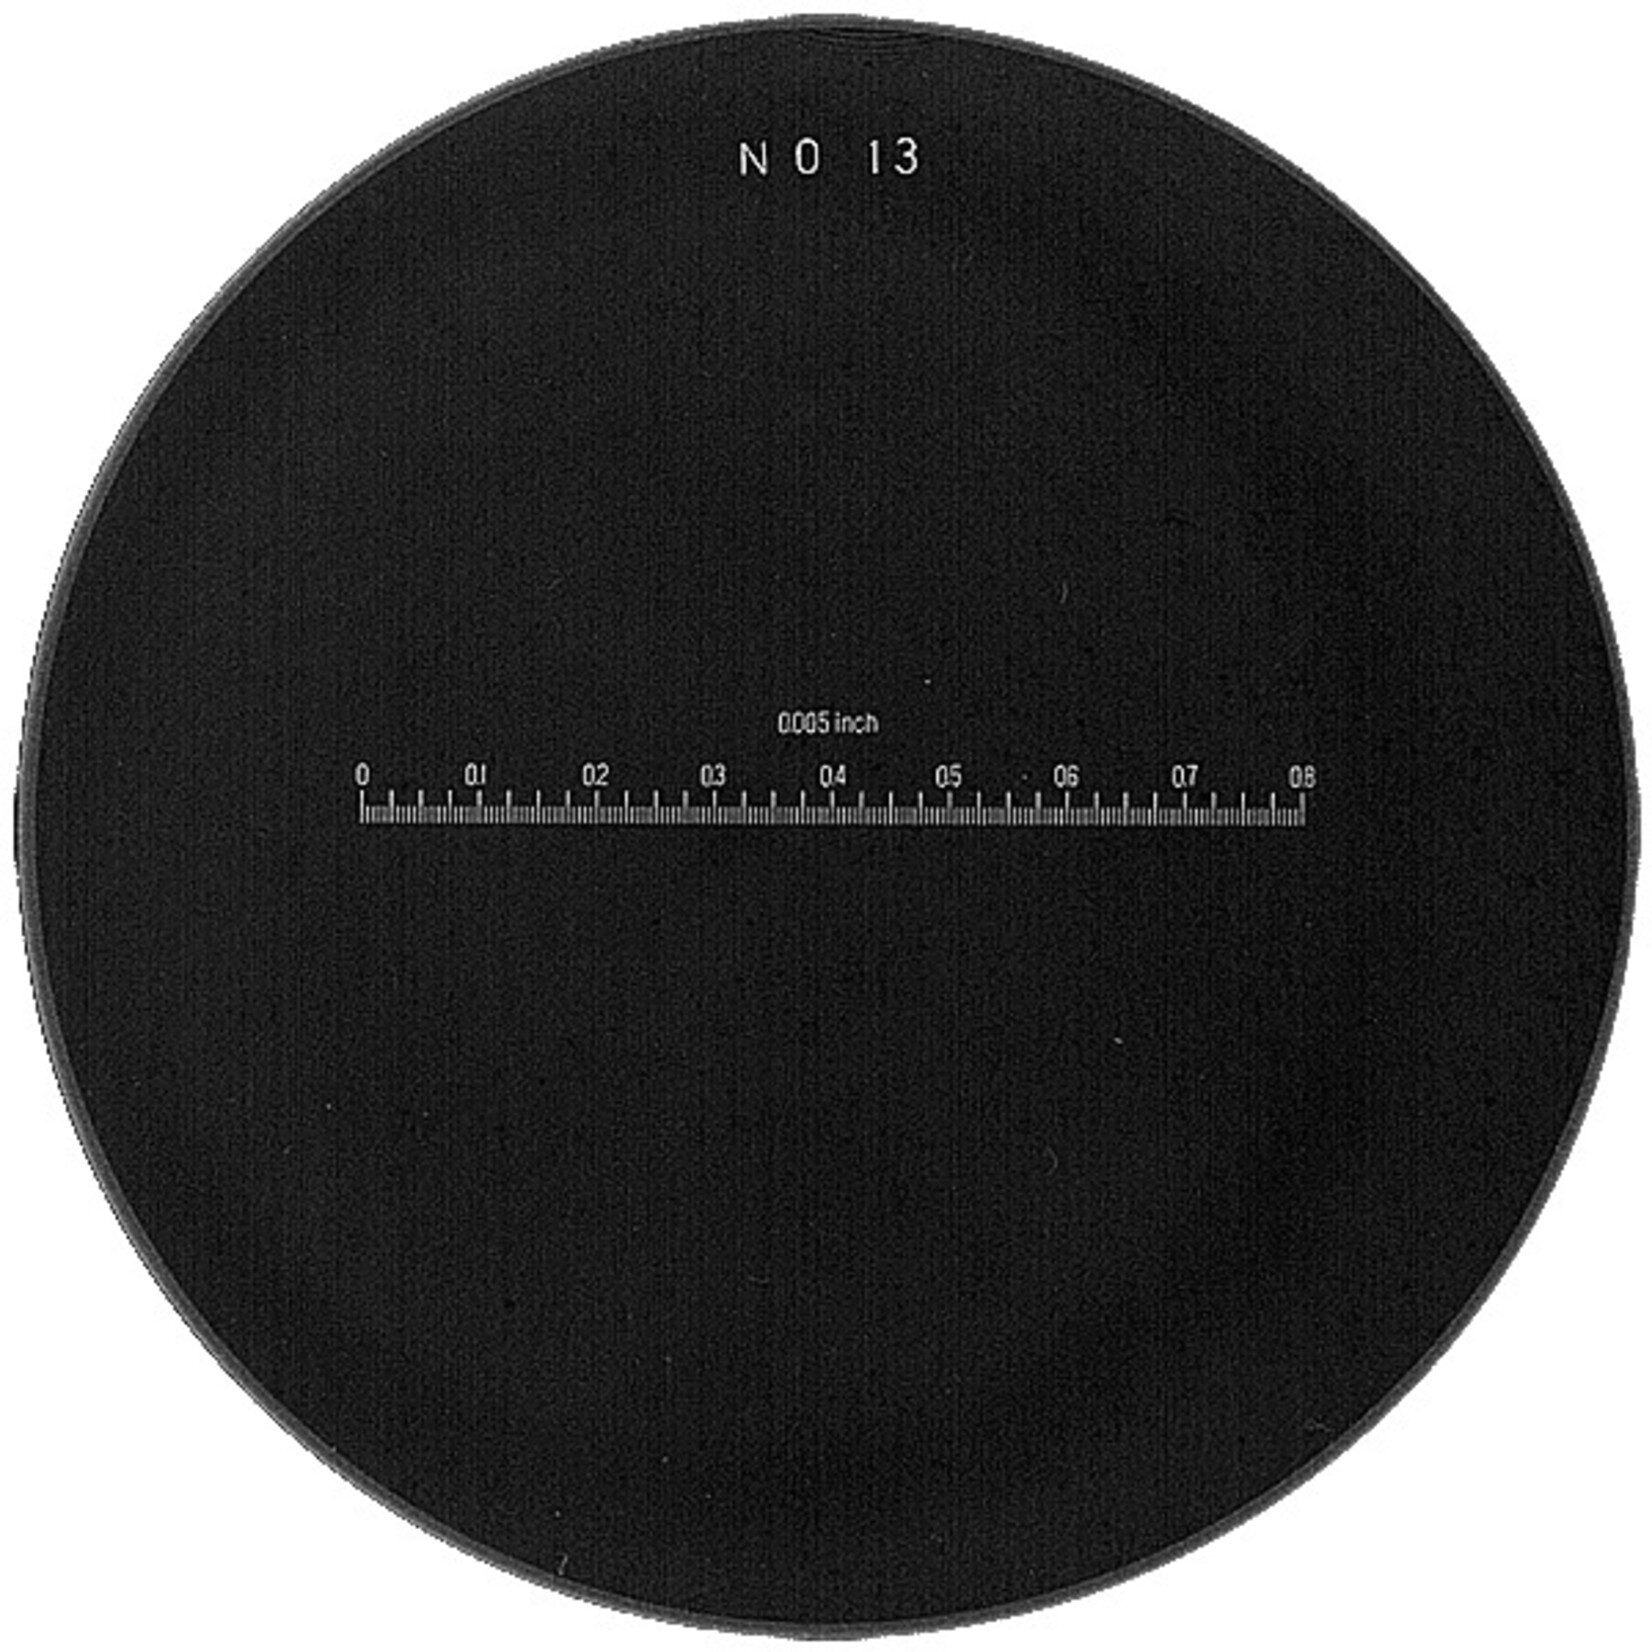 Scale per le lenti di misurazione 1983, 2028, 2004 e KIMAG-10 in bianco